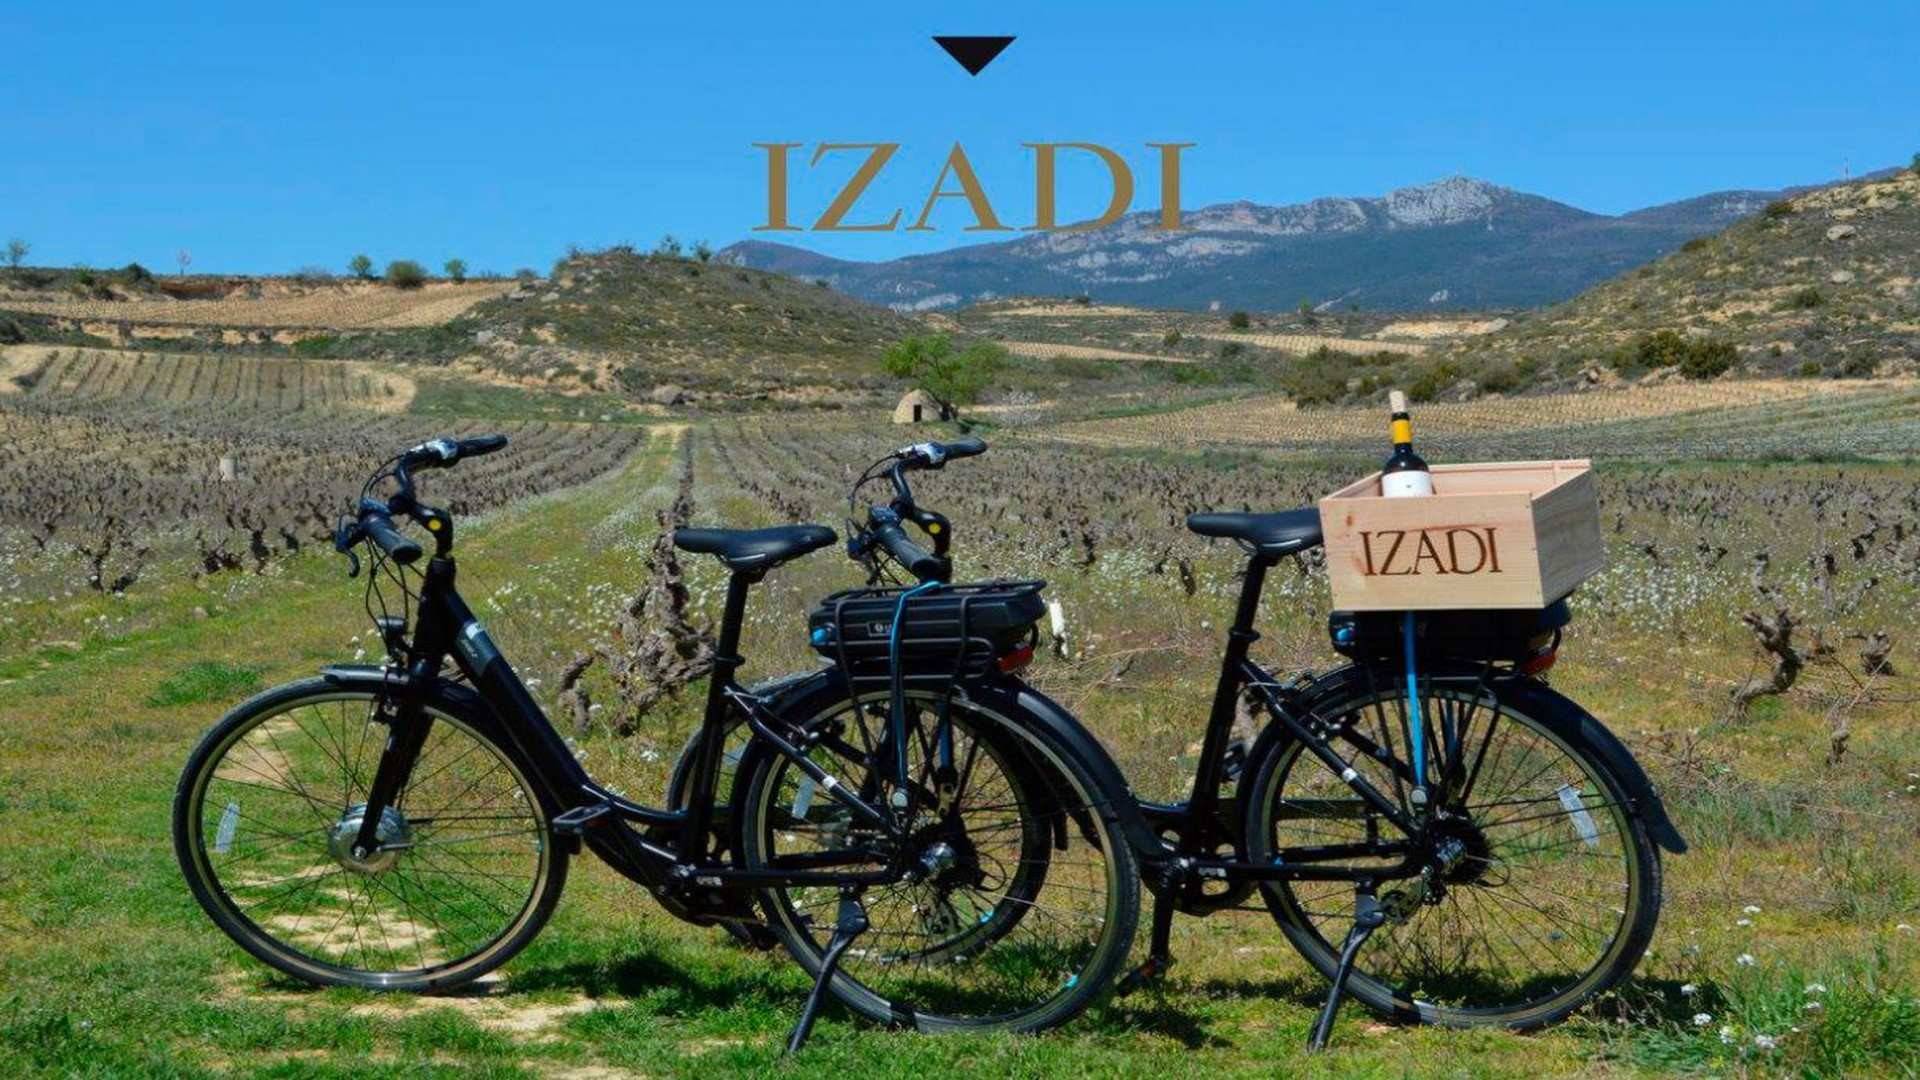 La ruta de enoturismo más aclamada de Izadi se realiza por los viñedos en bicicleta eléctrica.